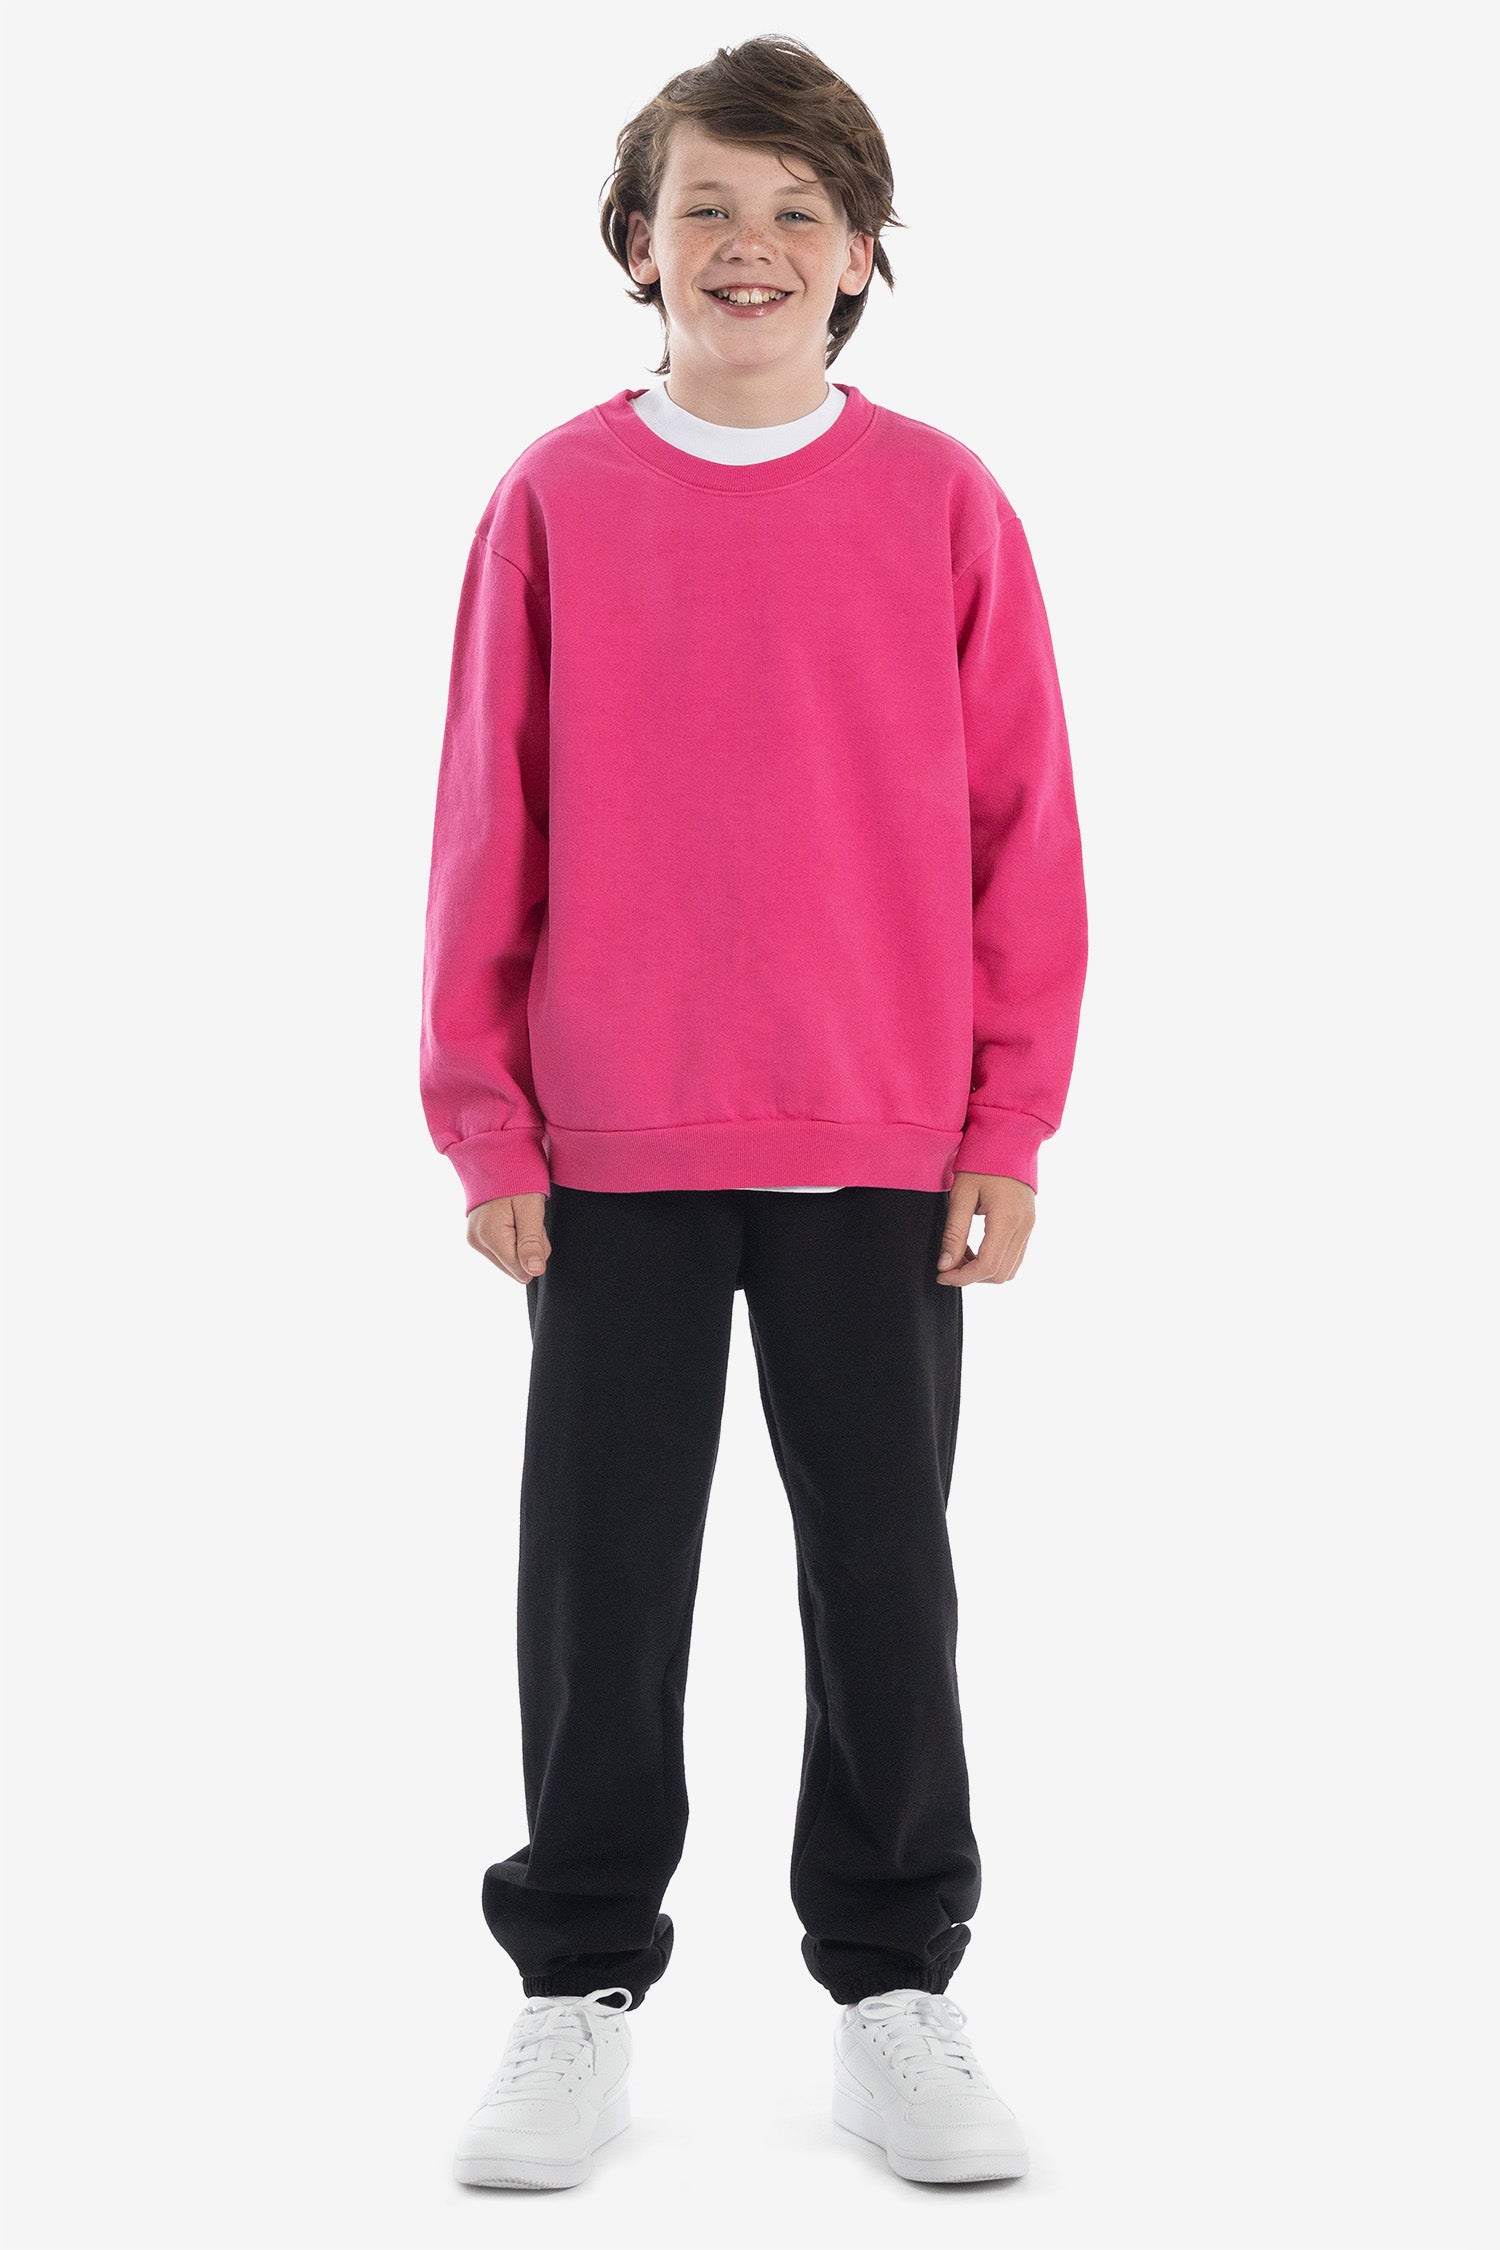 HF107GD - Kids Heavy Fleece Garment Dye Crew Sweatshirt – Los Angeles  Apparel